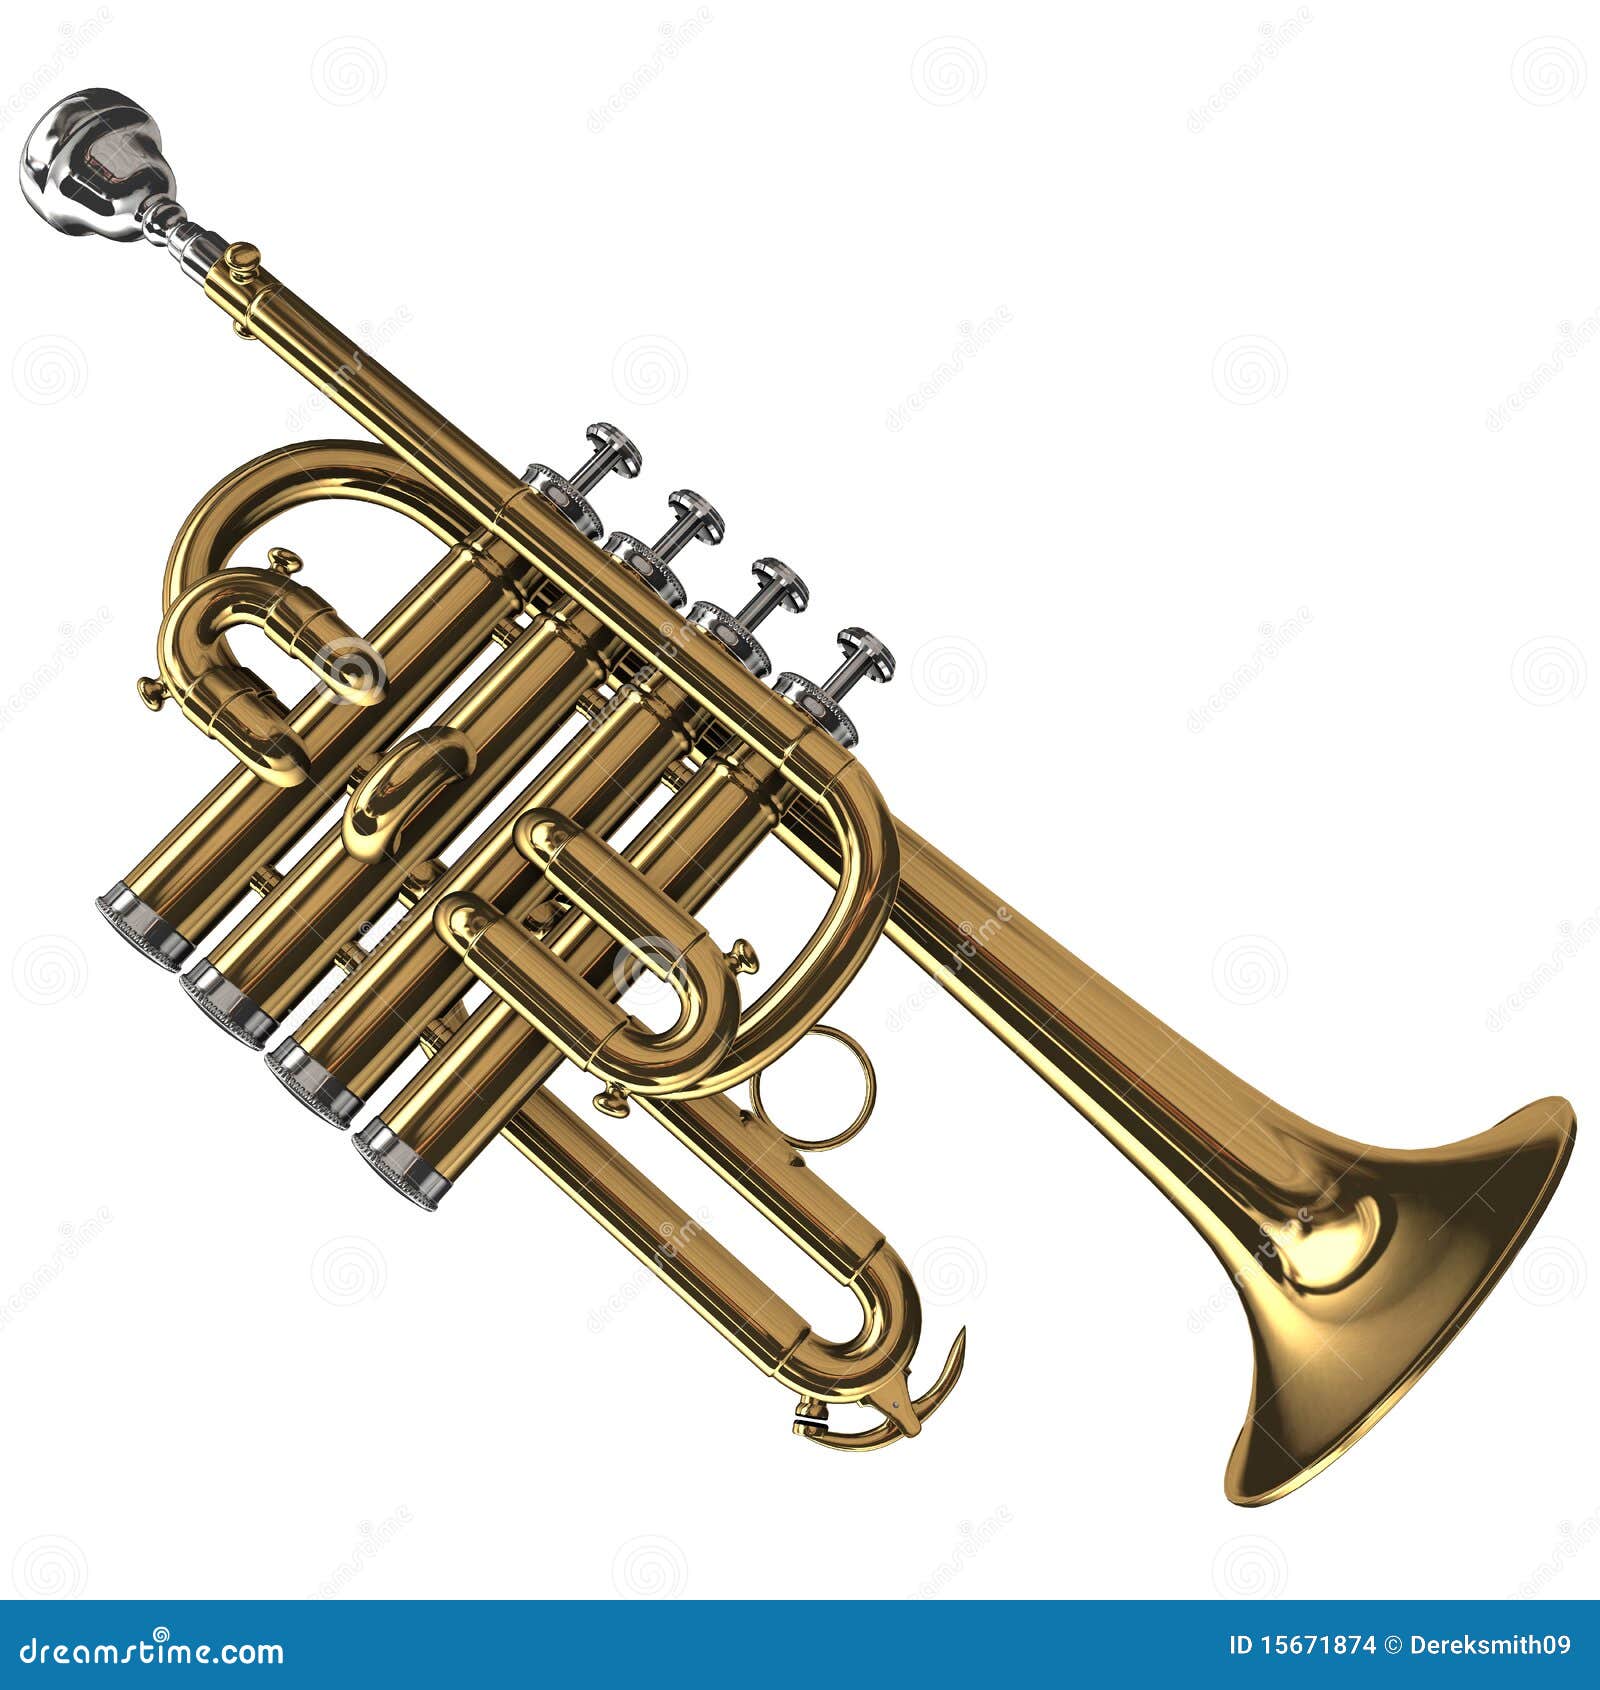 brass piccolo trumpet